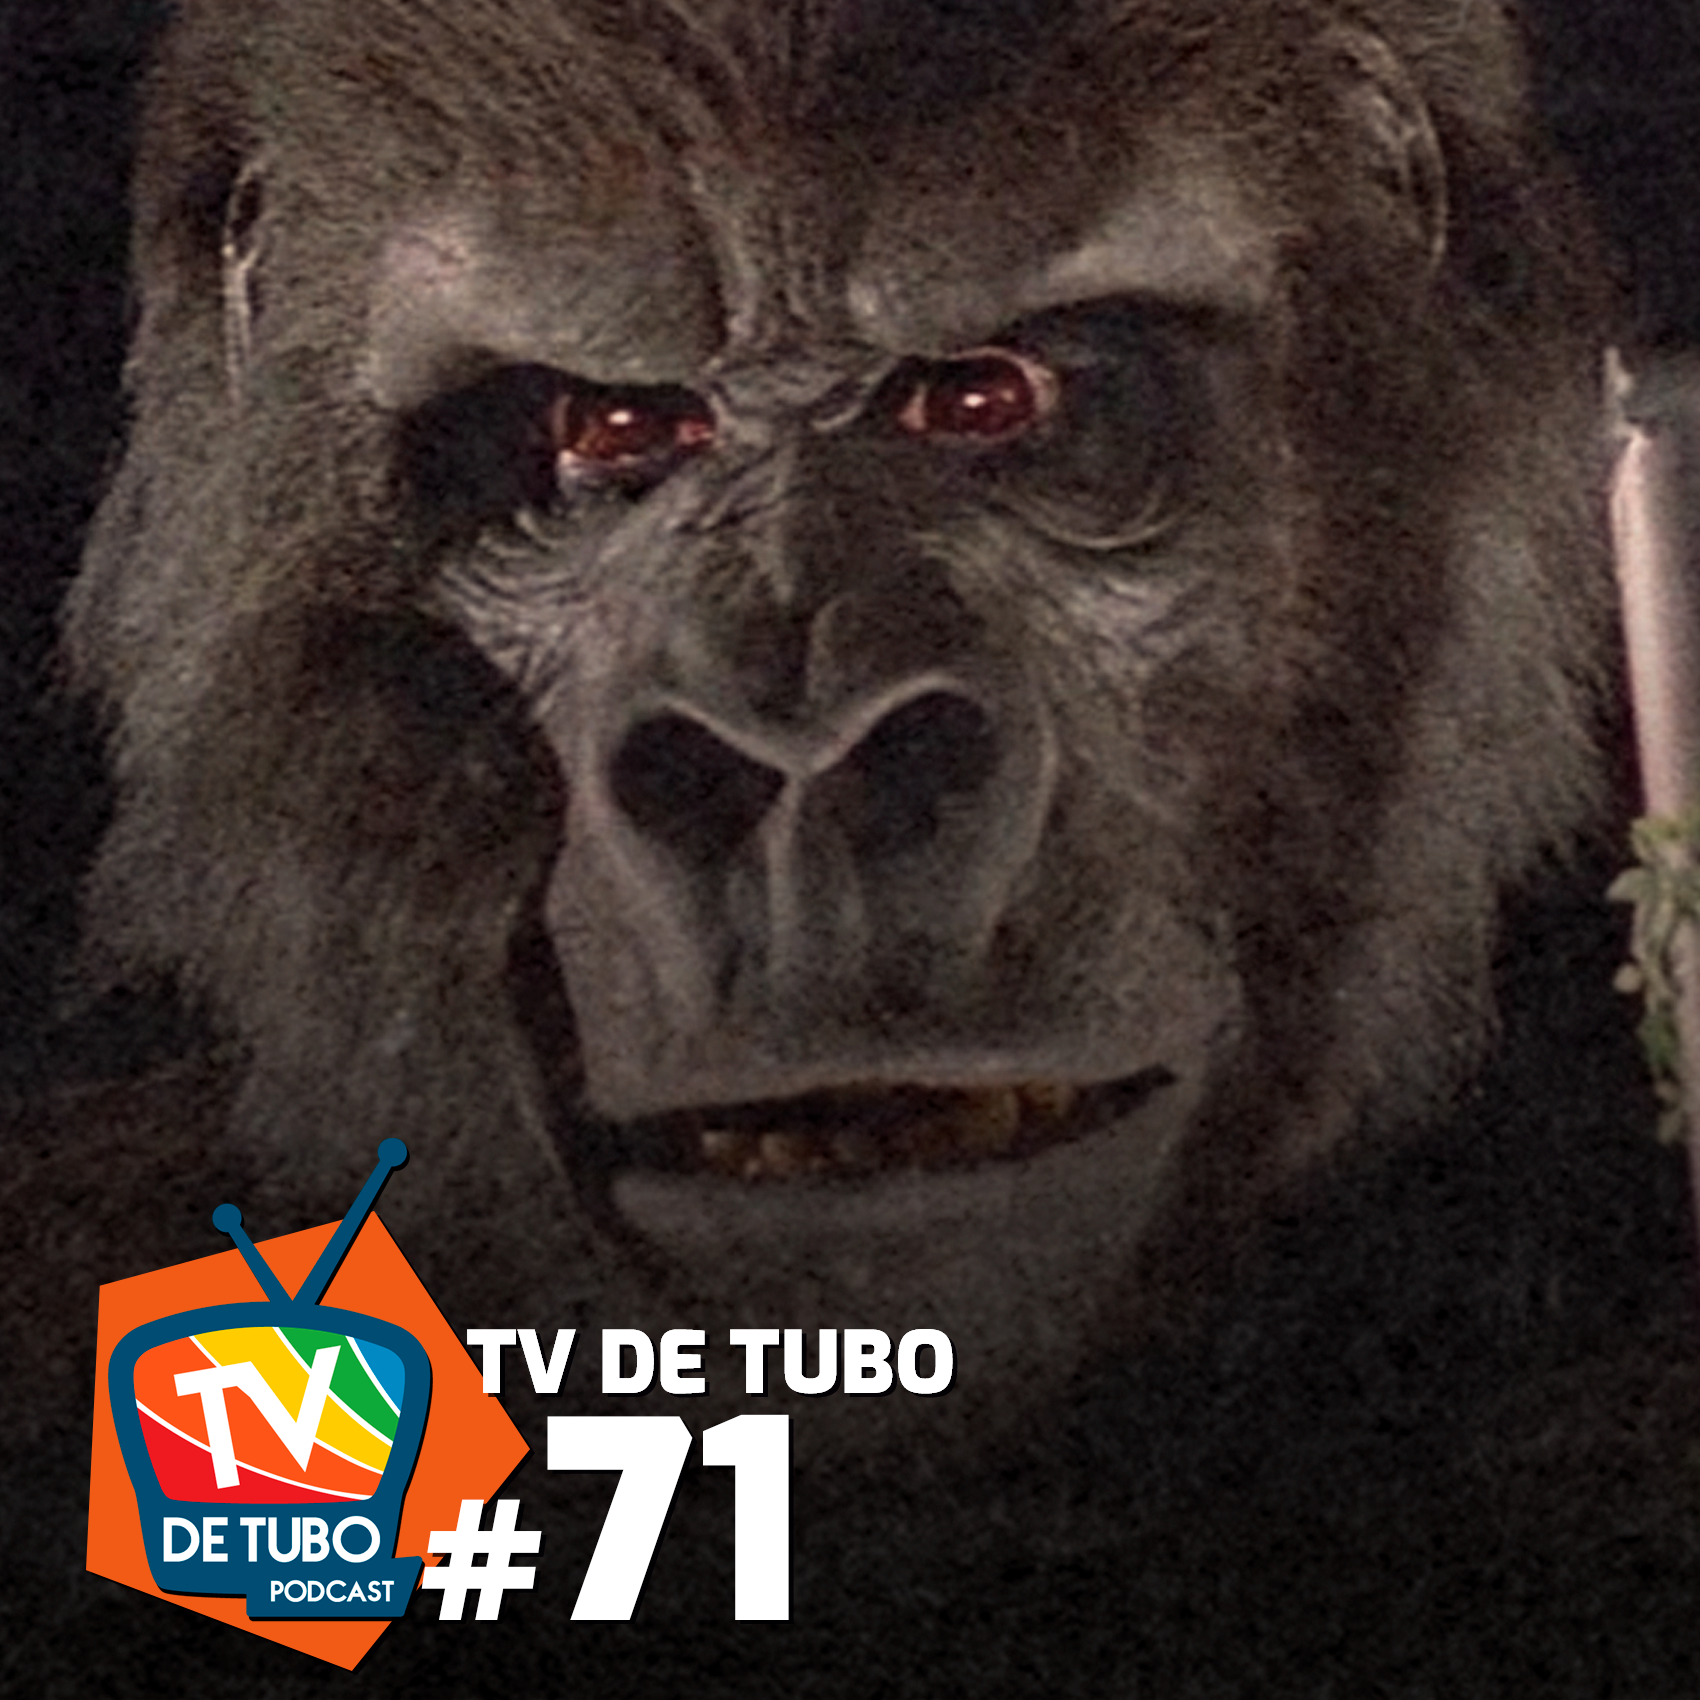 TV de Tubo #71 - Filmes do King Kong